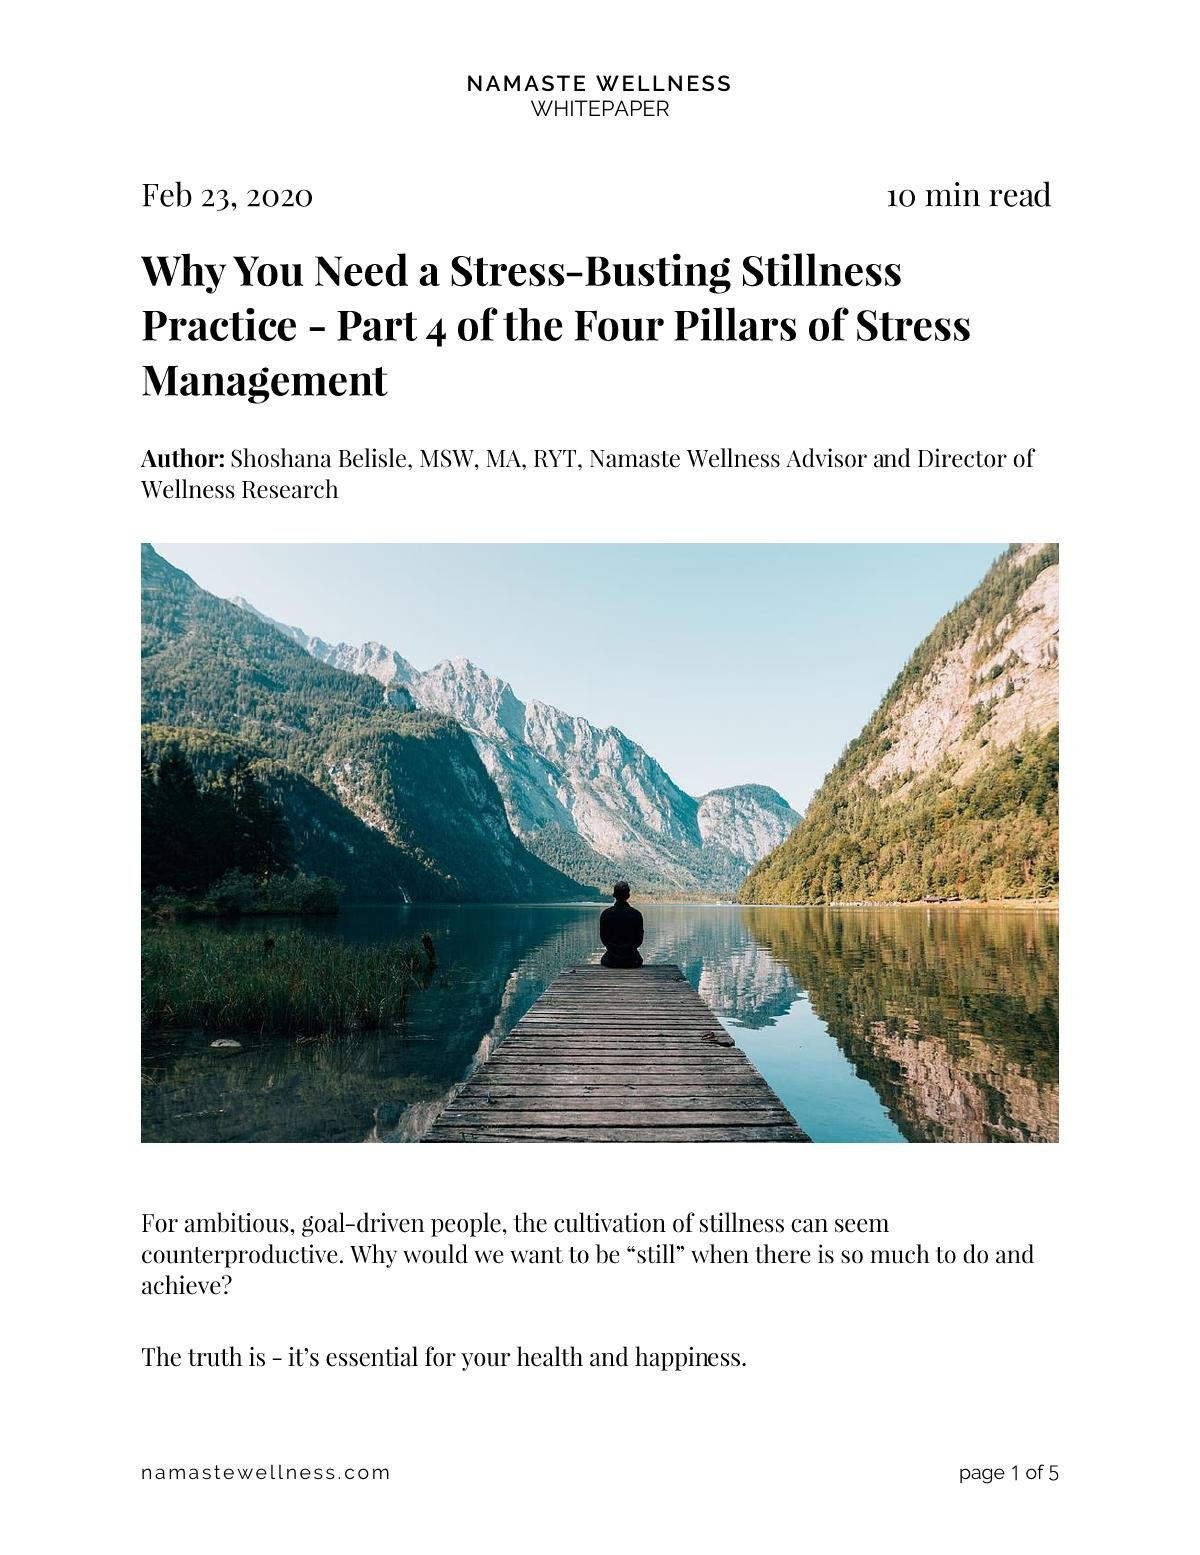 Part 4 of the Four Pillars of Stress Management - Stillness